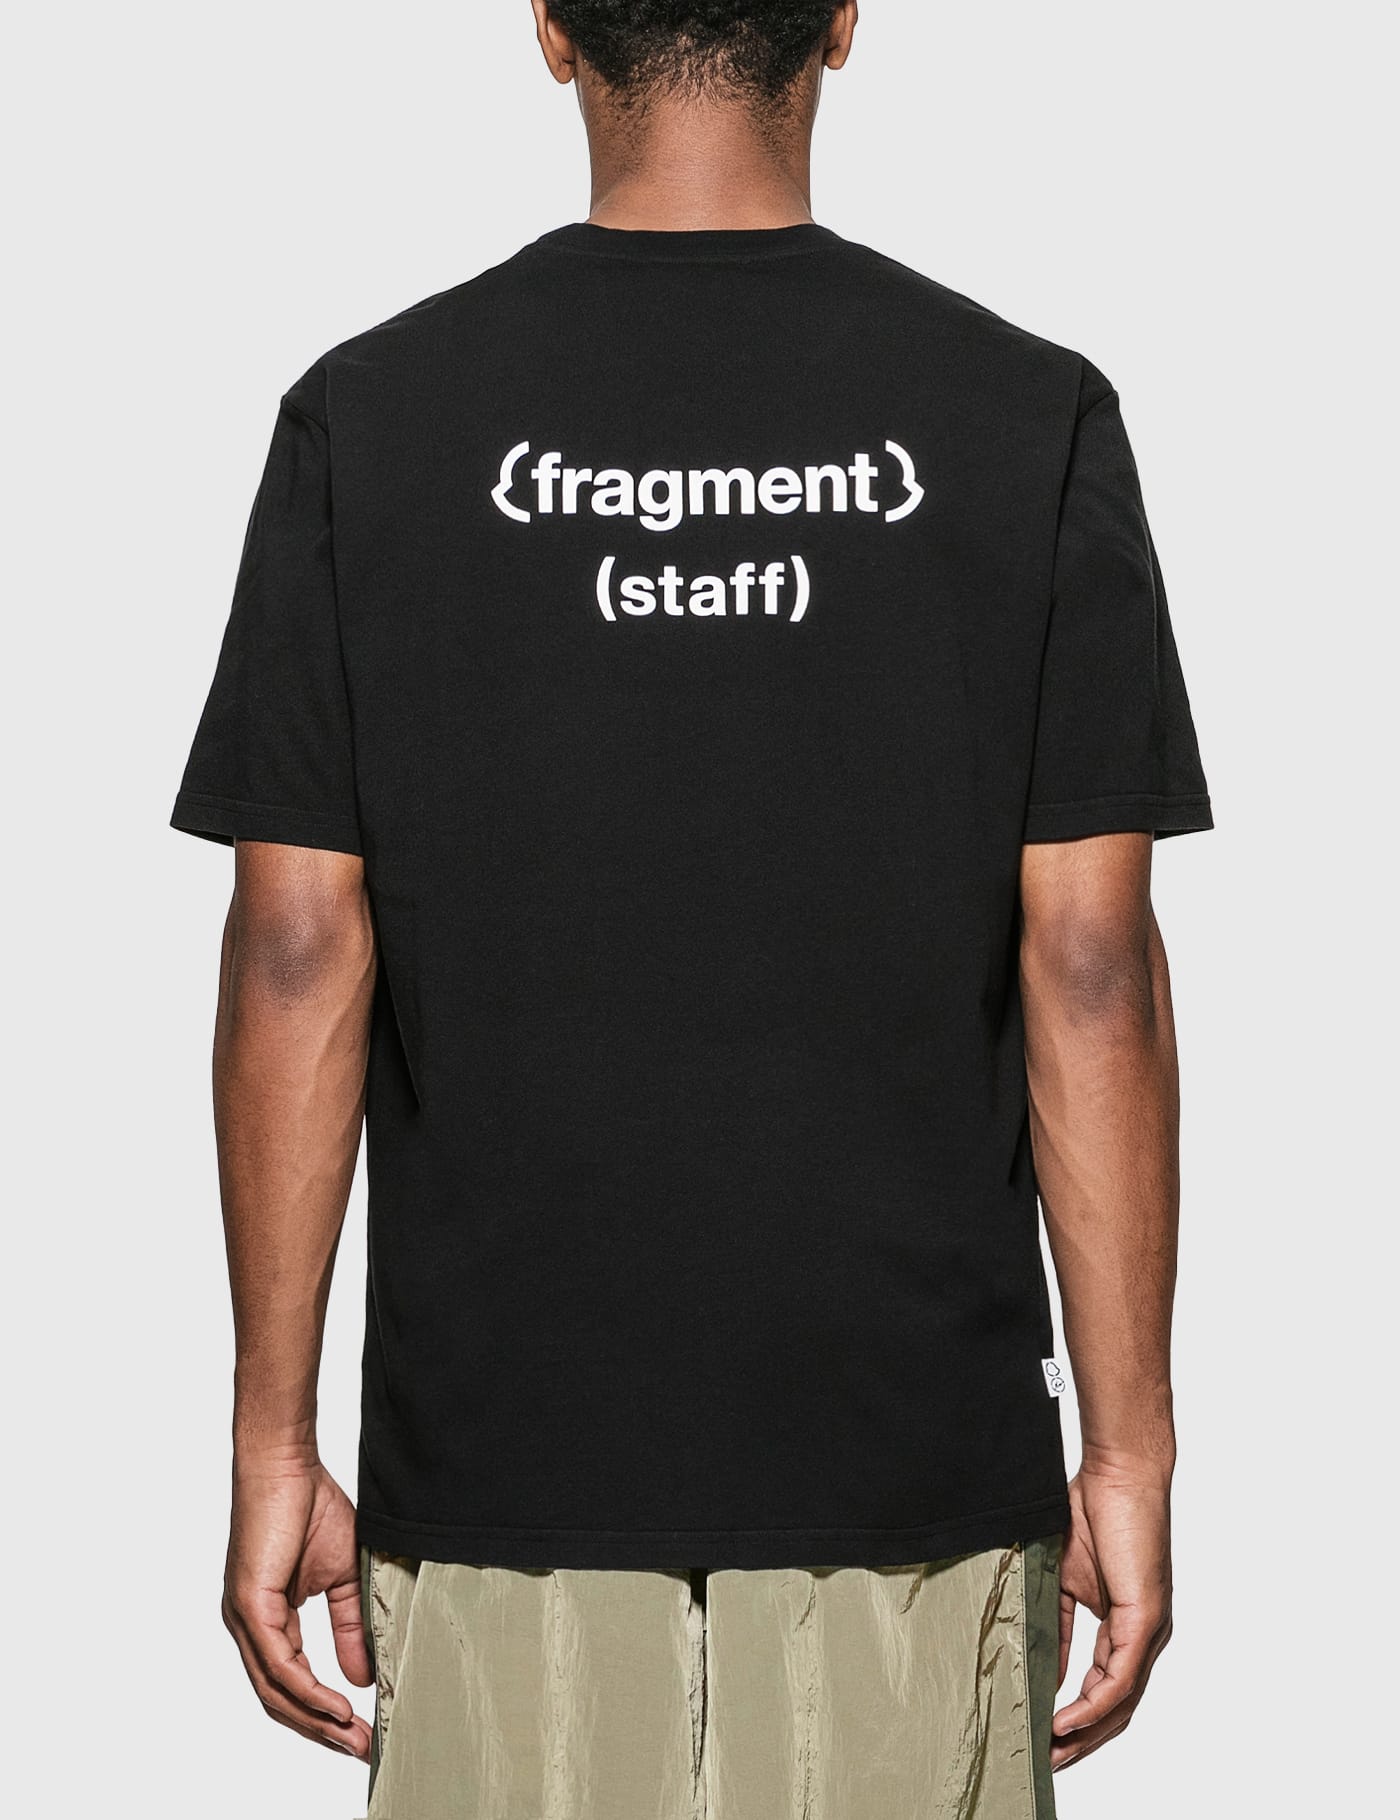 以上を踏まえてご購入くださいMONCLER GENIUS / Fragment ロゴ Tシャツ